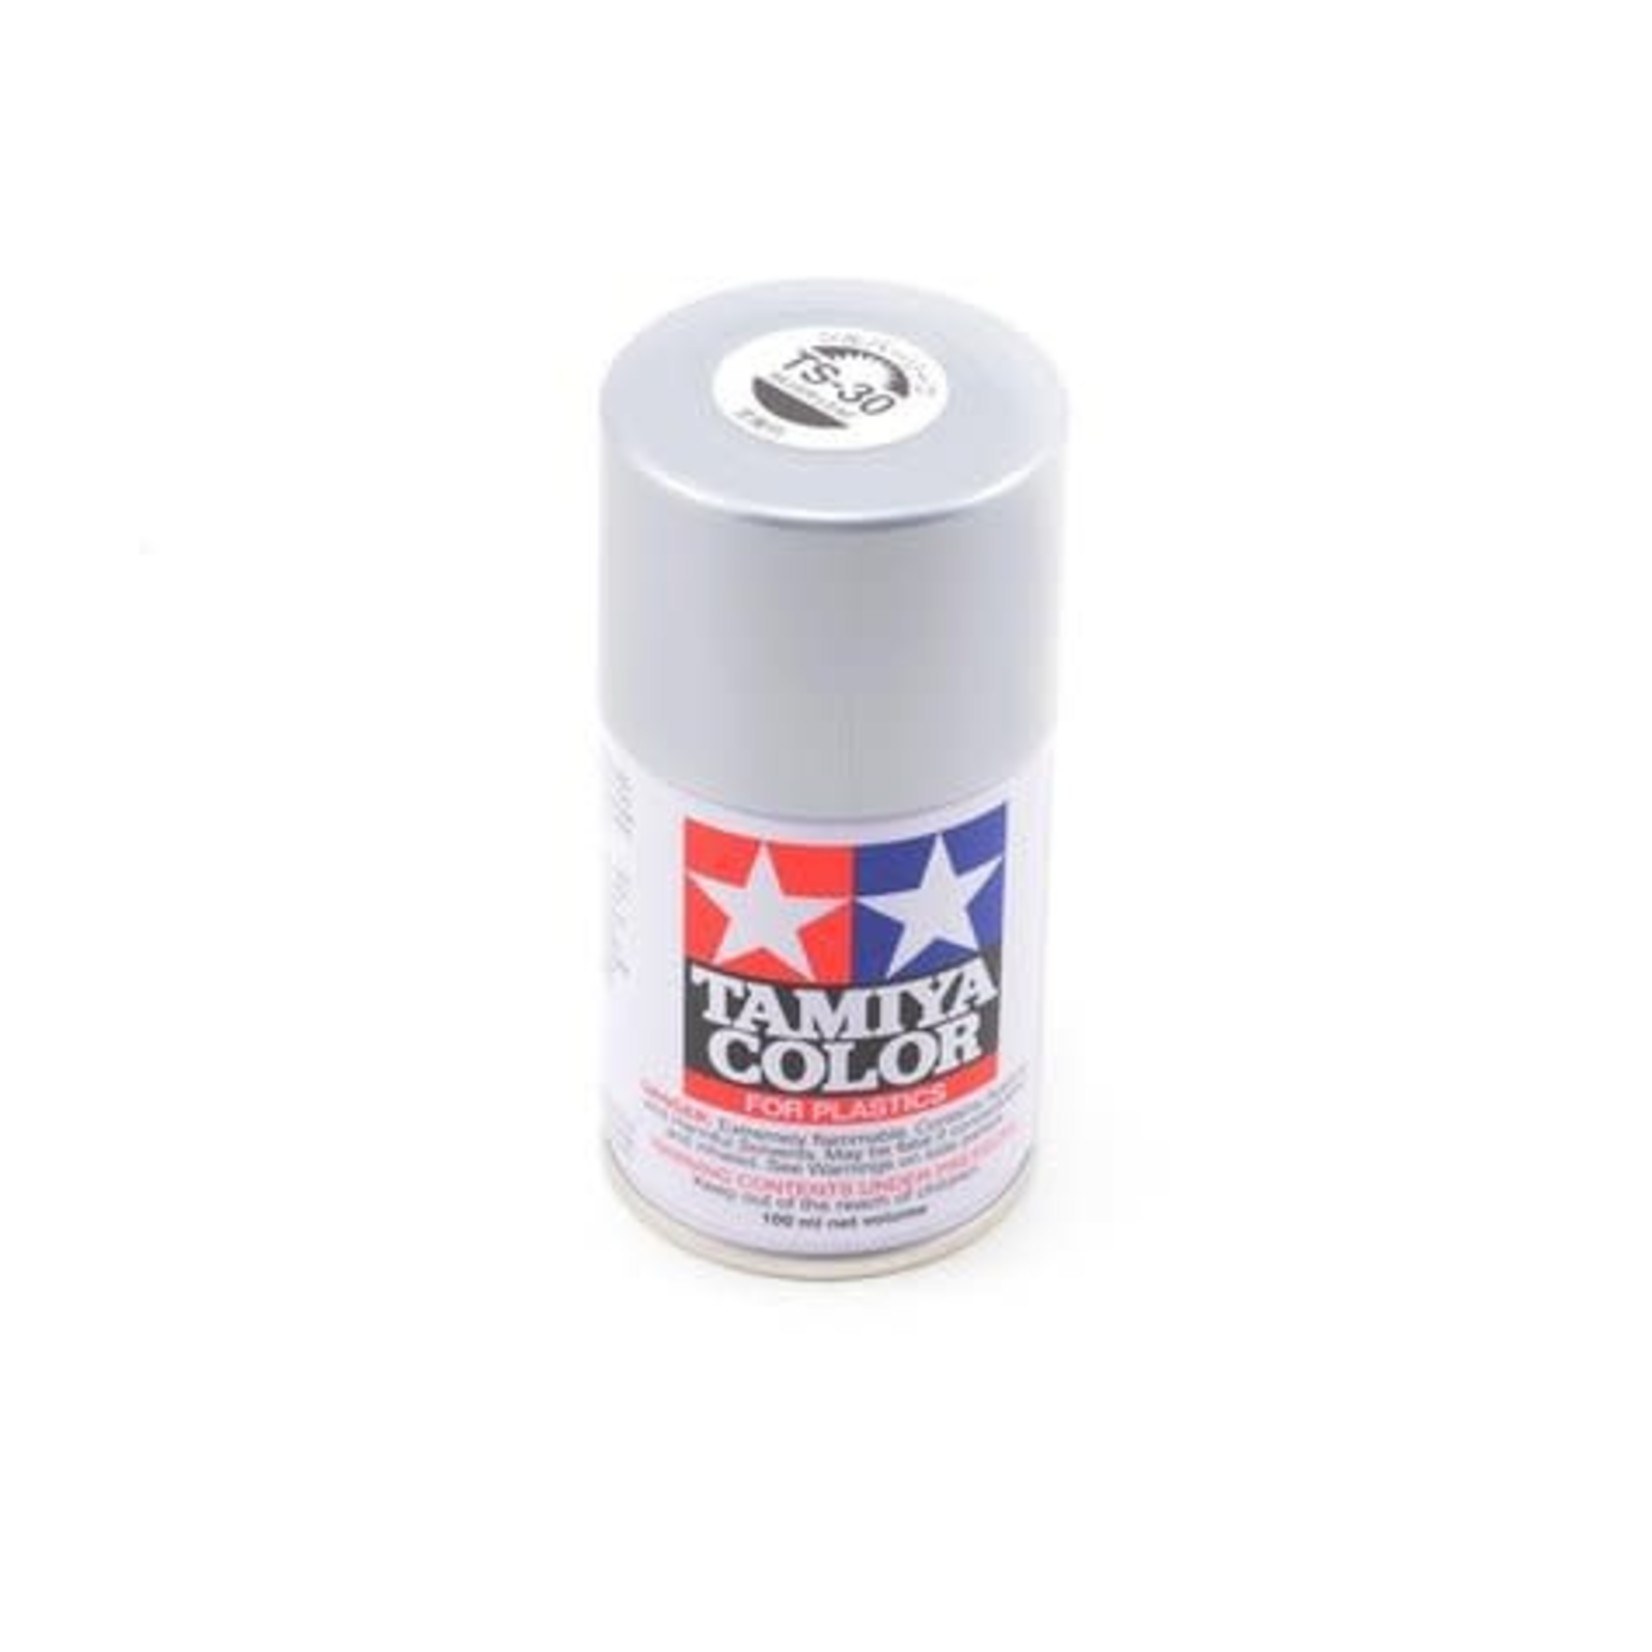 Tamiya Tamiya TS-30 Silver Leaf Lacquer Spray Paint (100ml) #85030